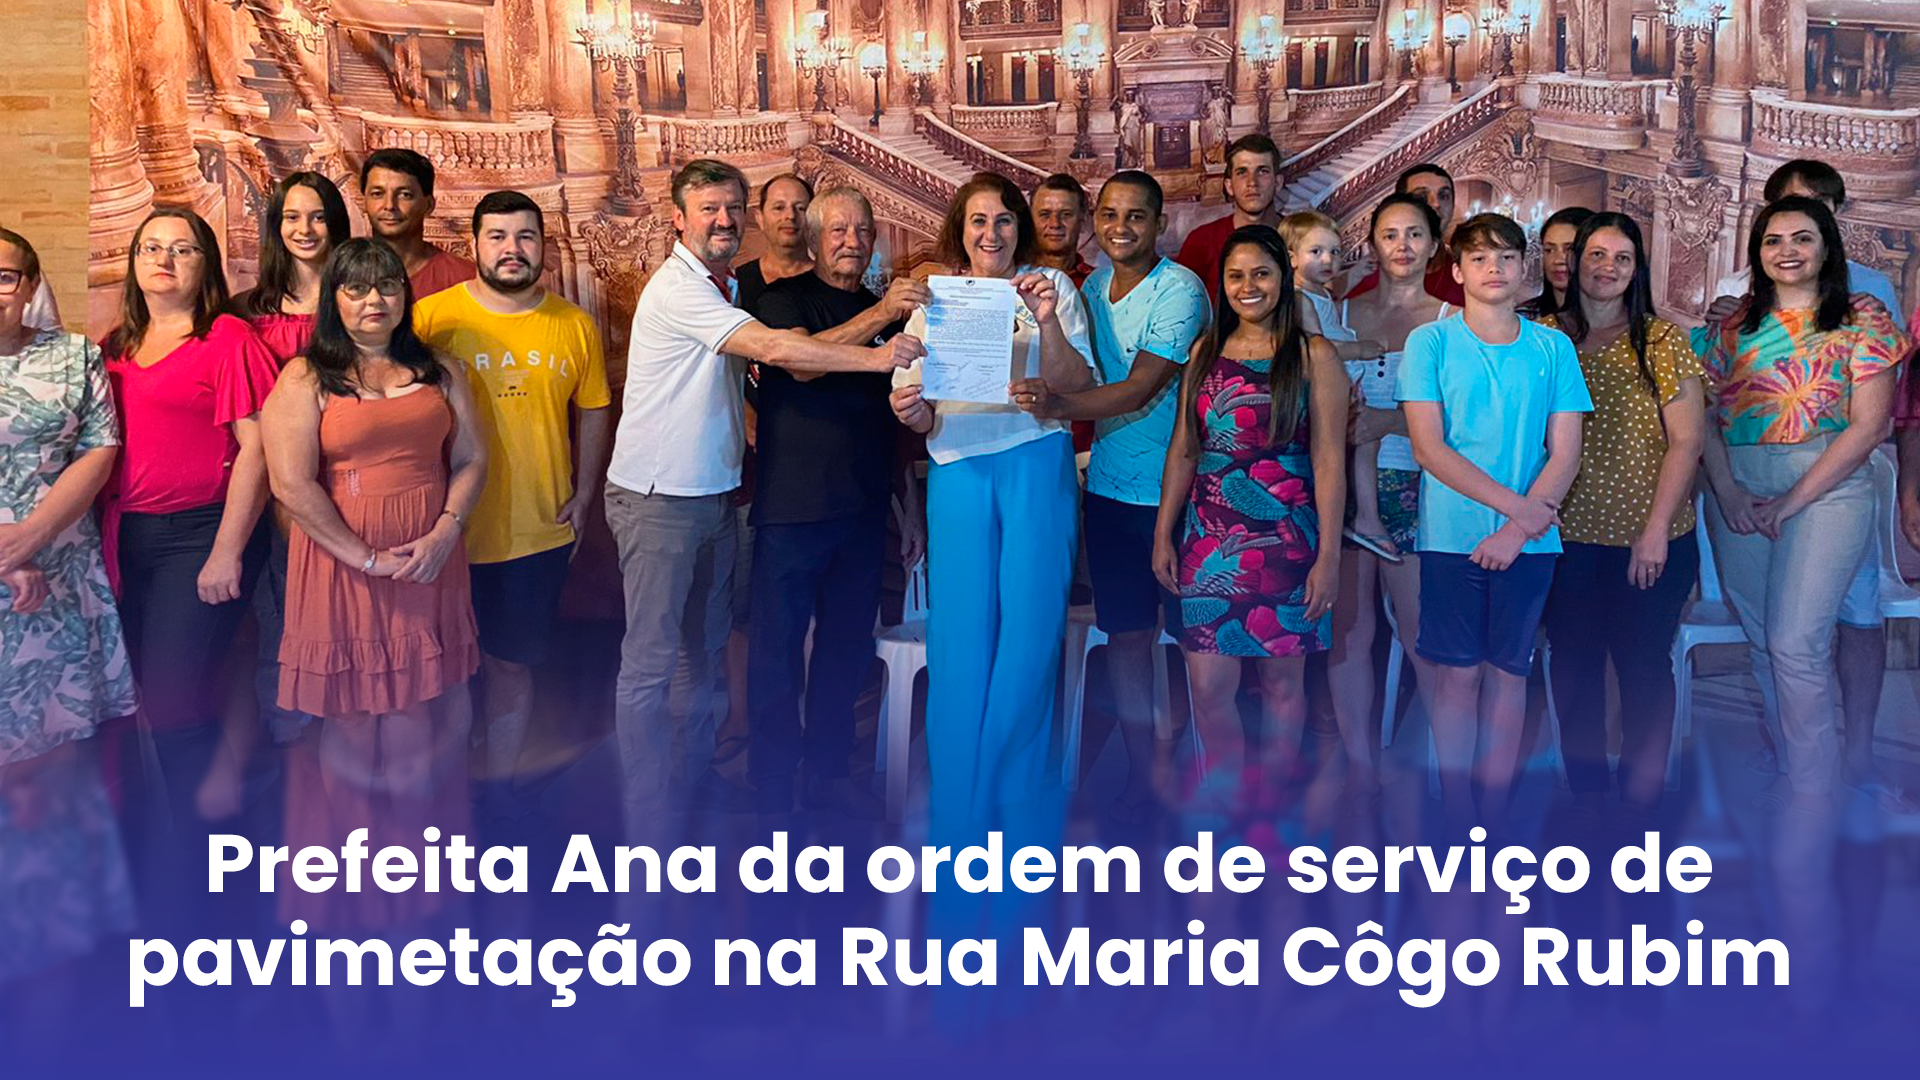 Prefeita Ana da ordem de serviços de pavimentação da rua Maria Côgo Rubim